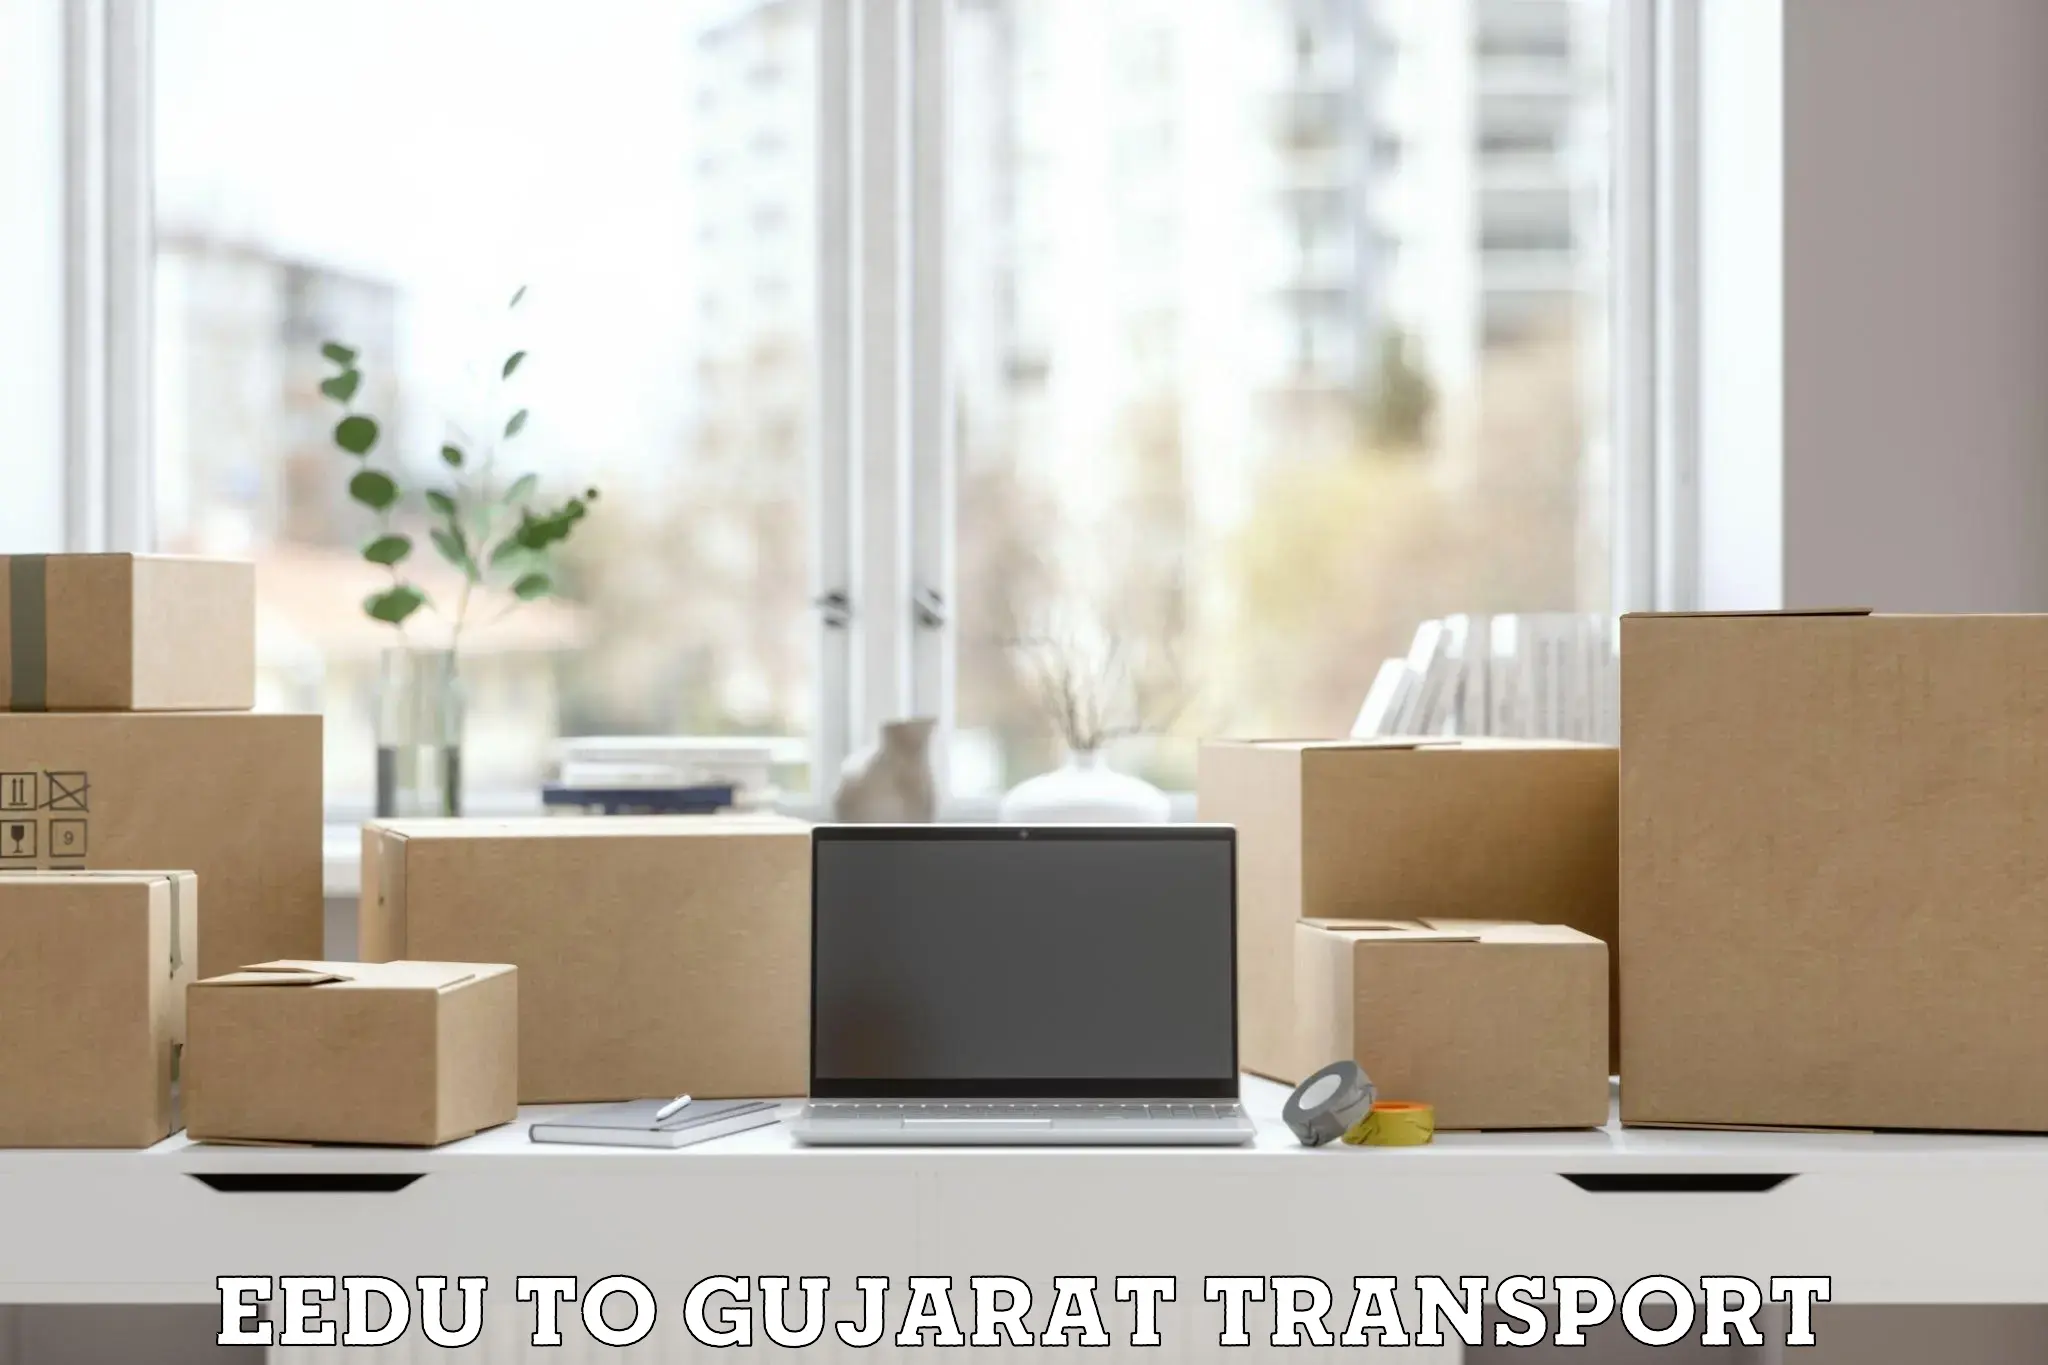 Furniture transport service Eedu to IIIT Surat